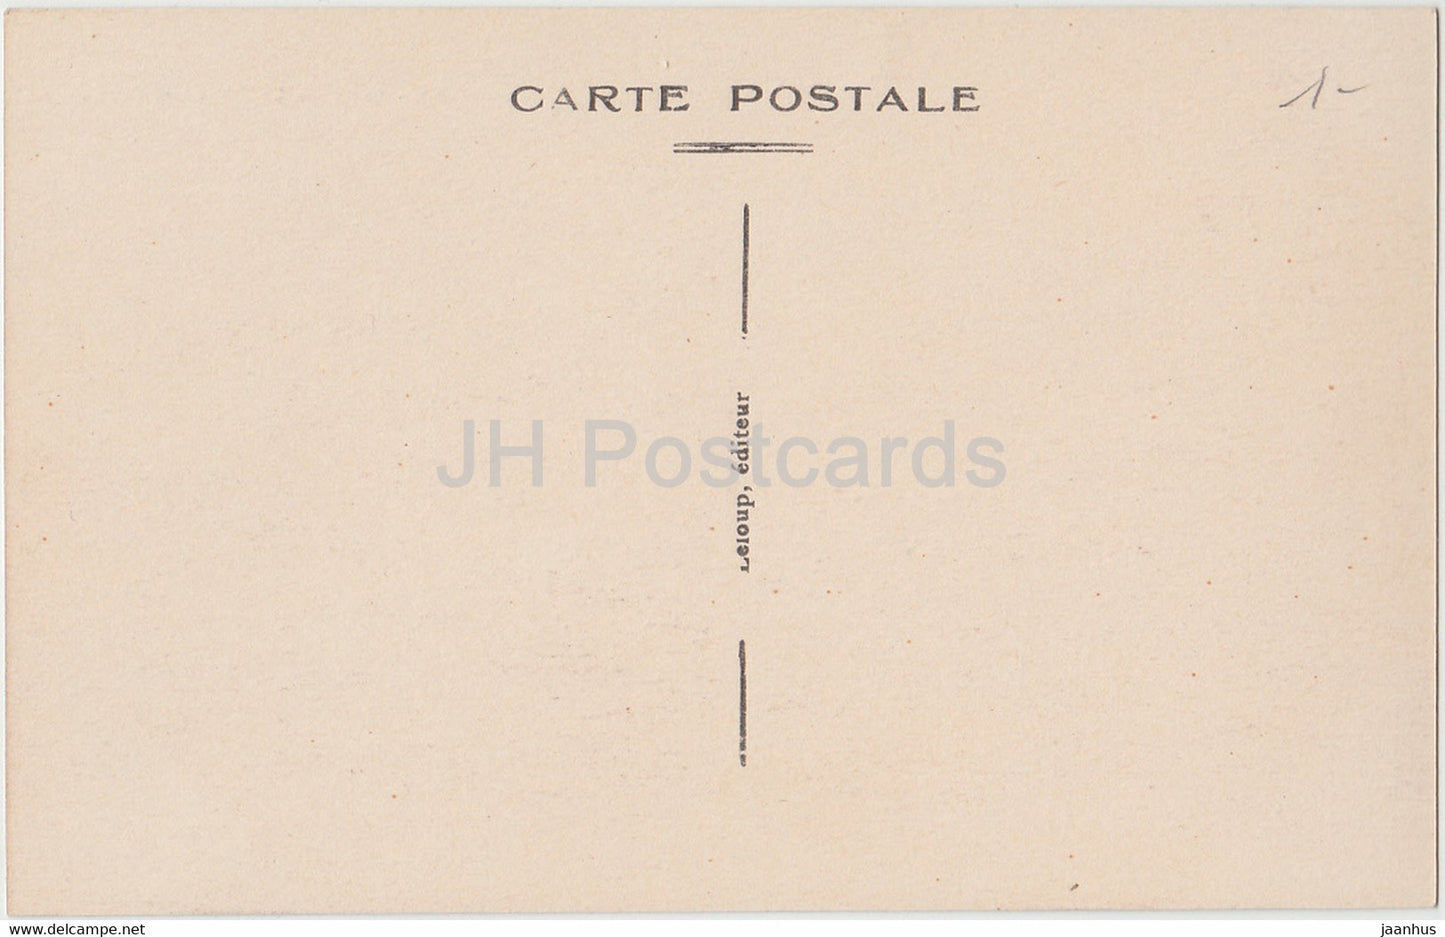 Mézières - Le Batiment Communal - carte postale ancienne - France - inutilisée